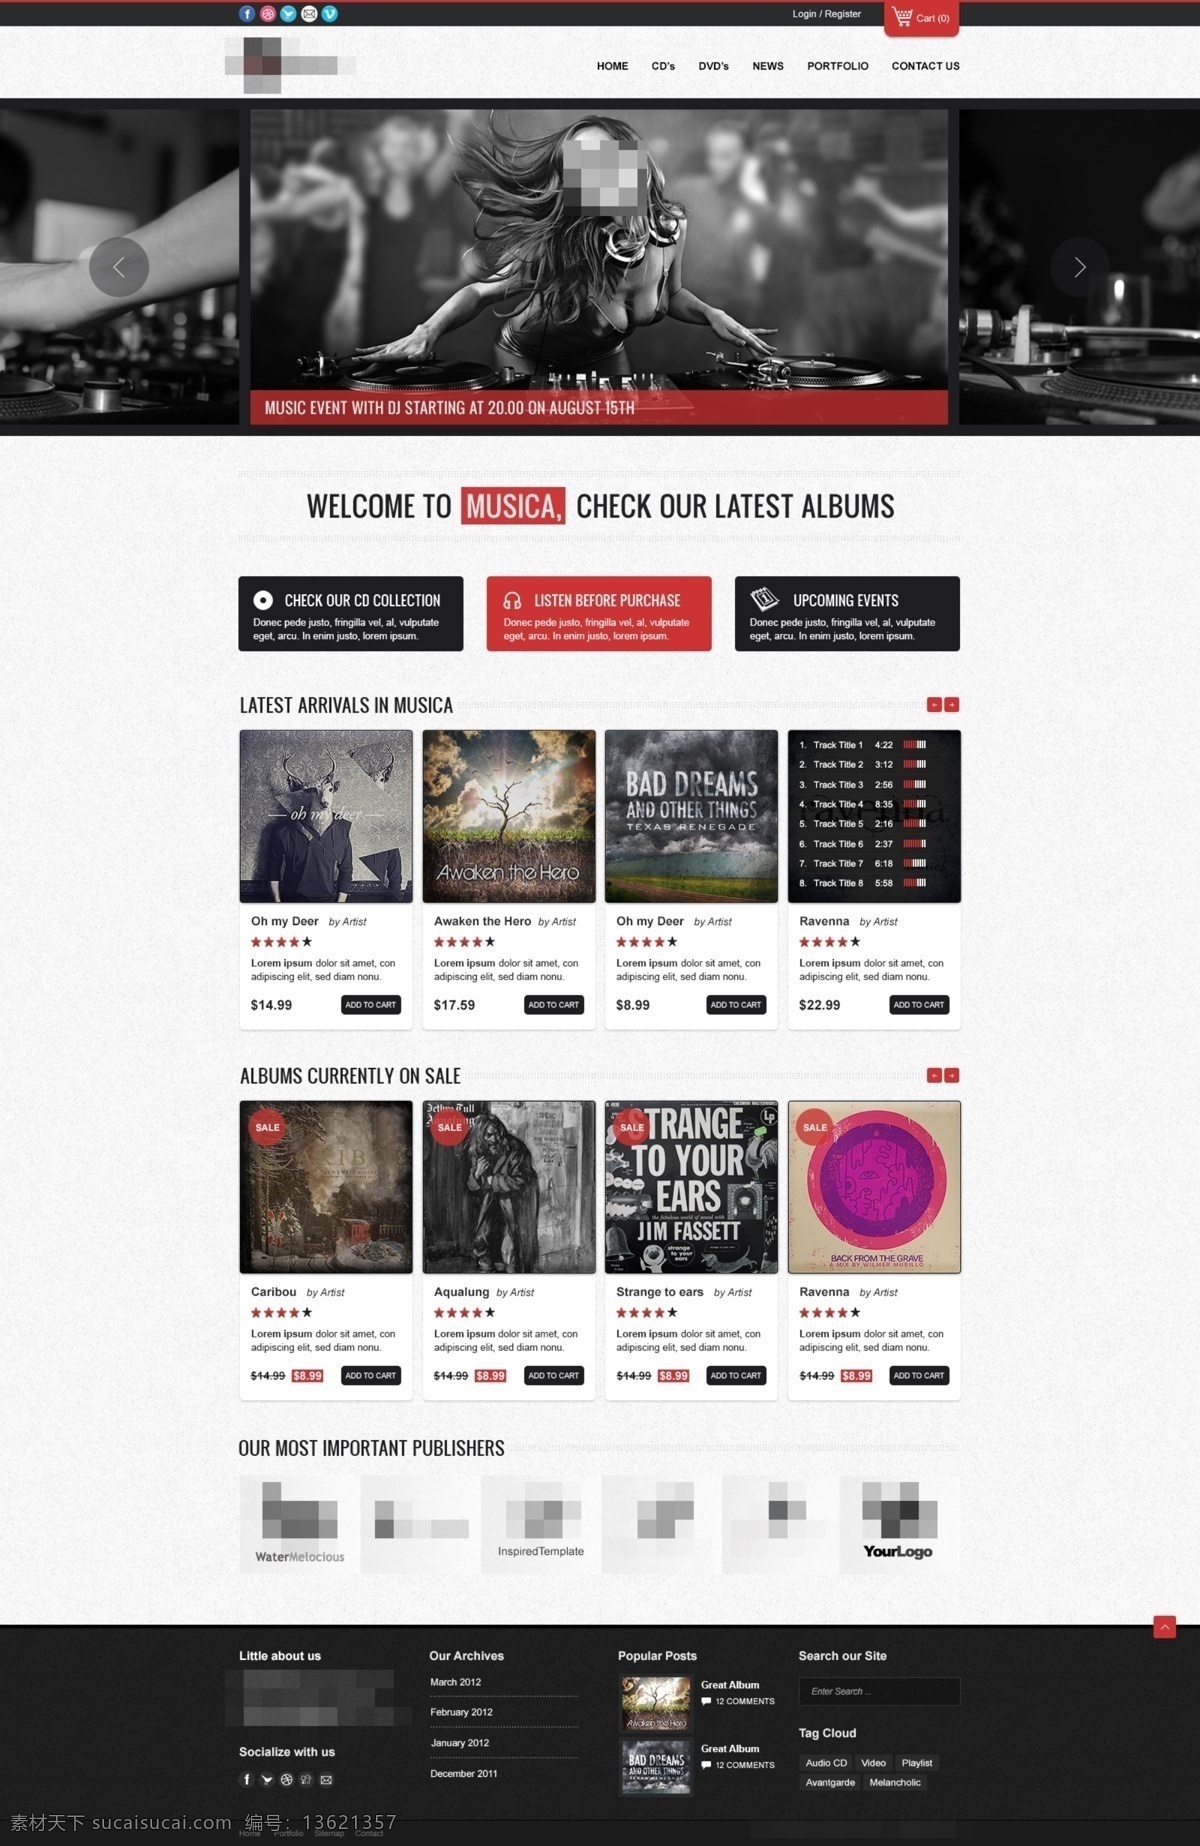 红色 音乐 歌曲 网站 模板 红色网站 音乐网站 音乐歌曲网站 歌曲网站 音乐网站模板 歌曲网站模板 模板设计 网站模板 企业模板 音乐模板网站